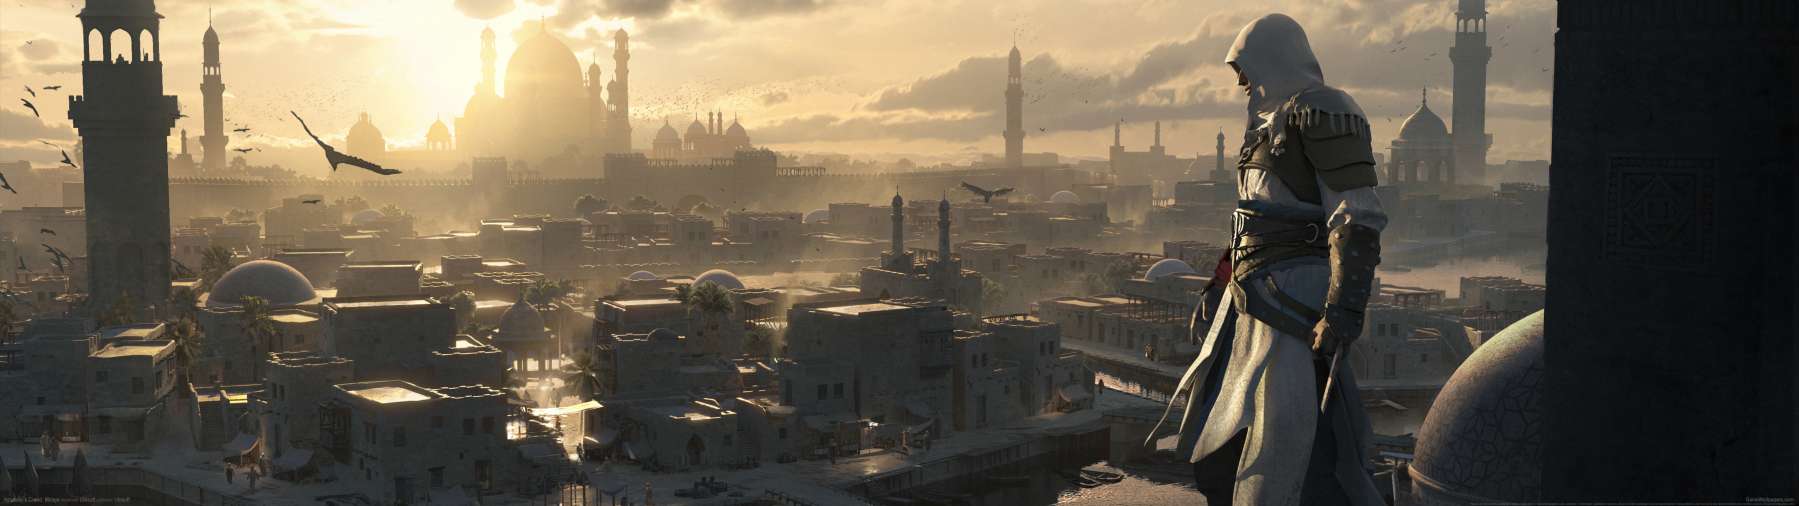 Assassin's Creed: Mirage superwide fondo de escritorio 11